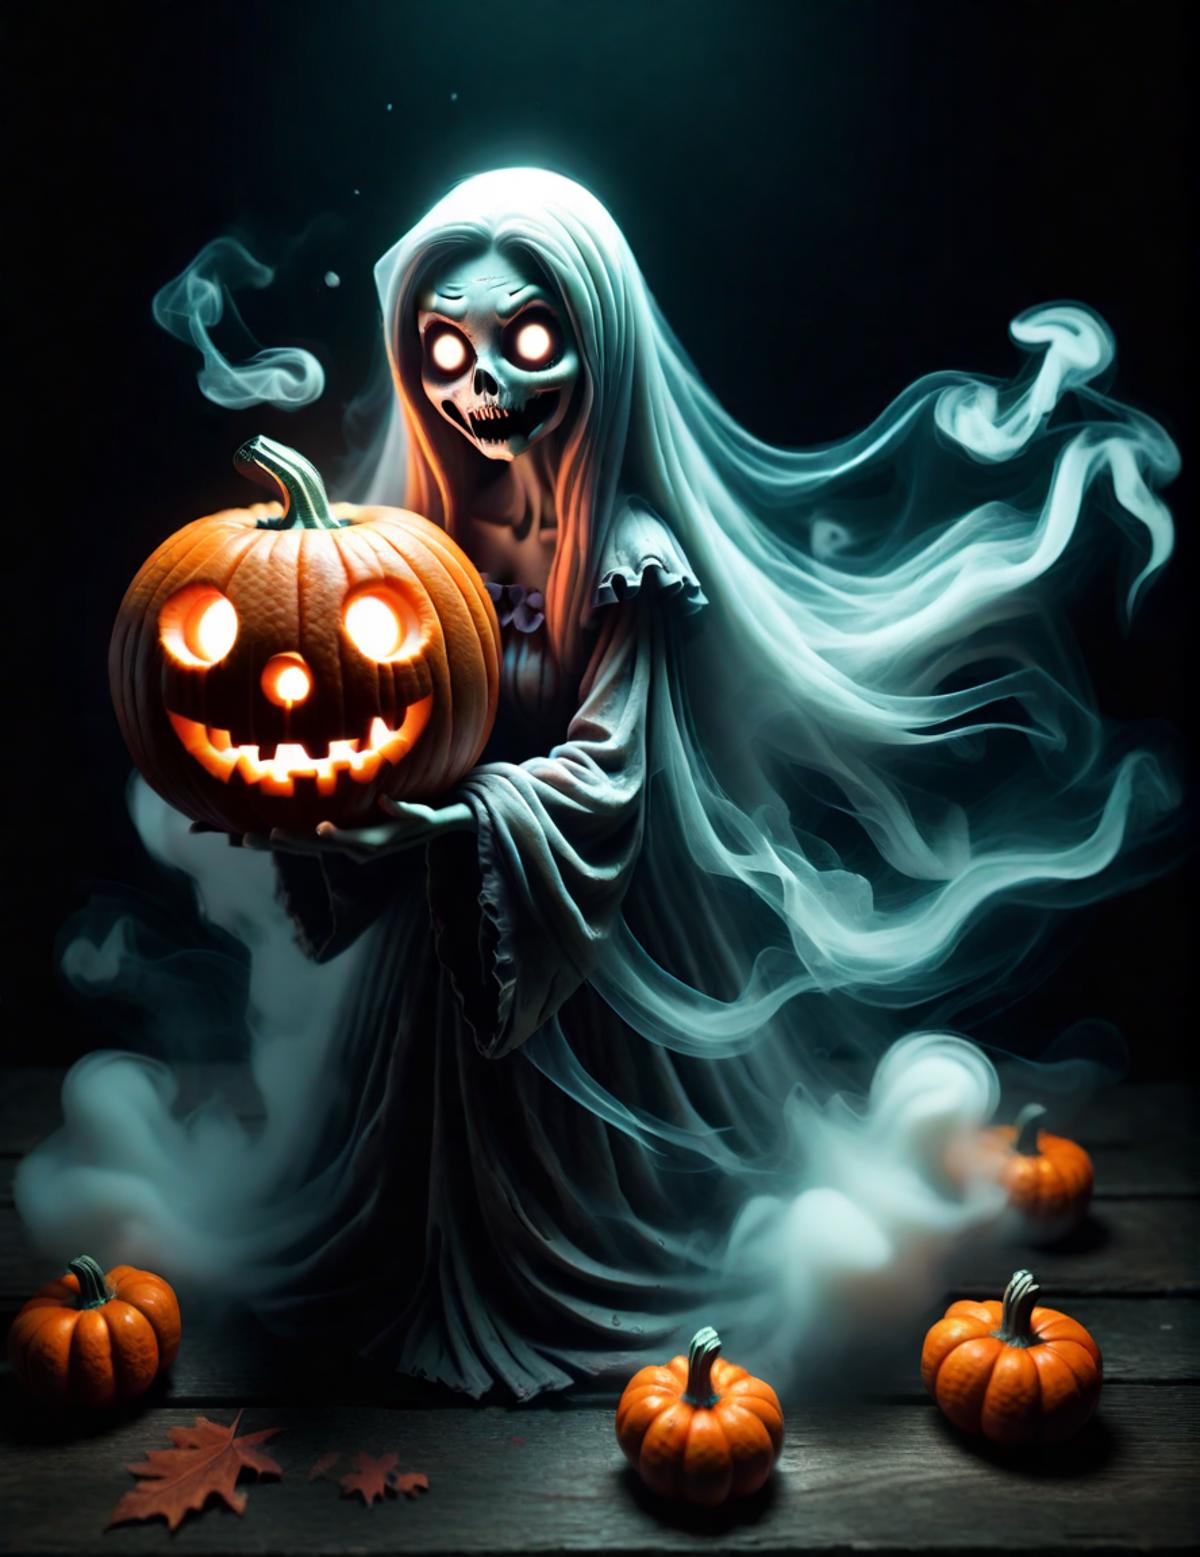 A spooky scene of a ghost holding a pumpkin in a dark setting.